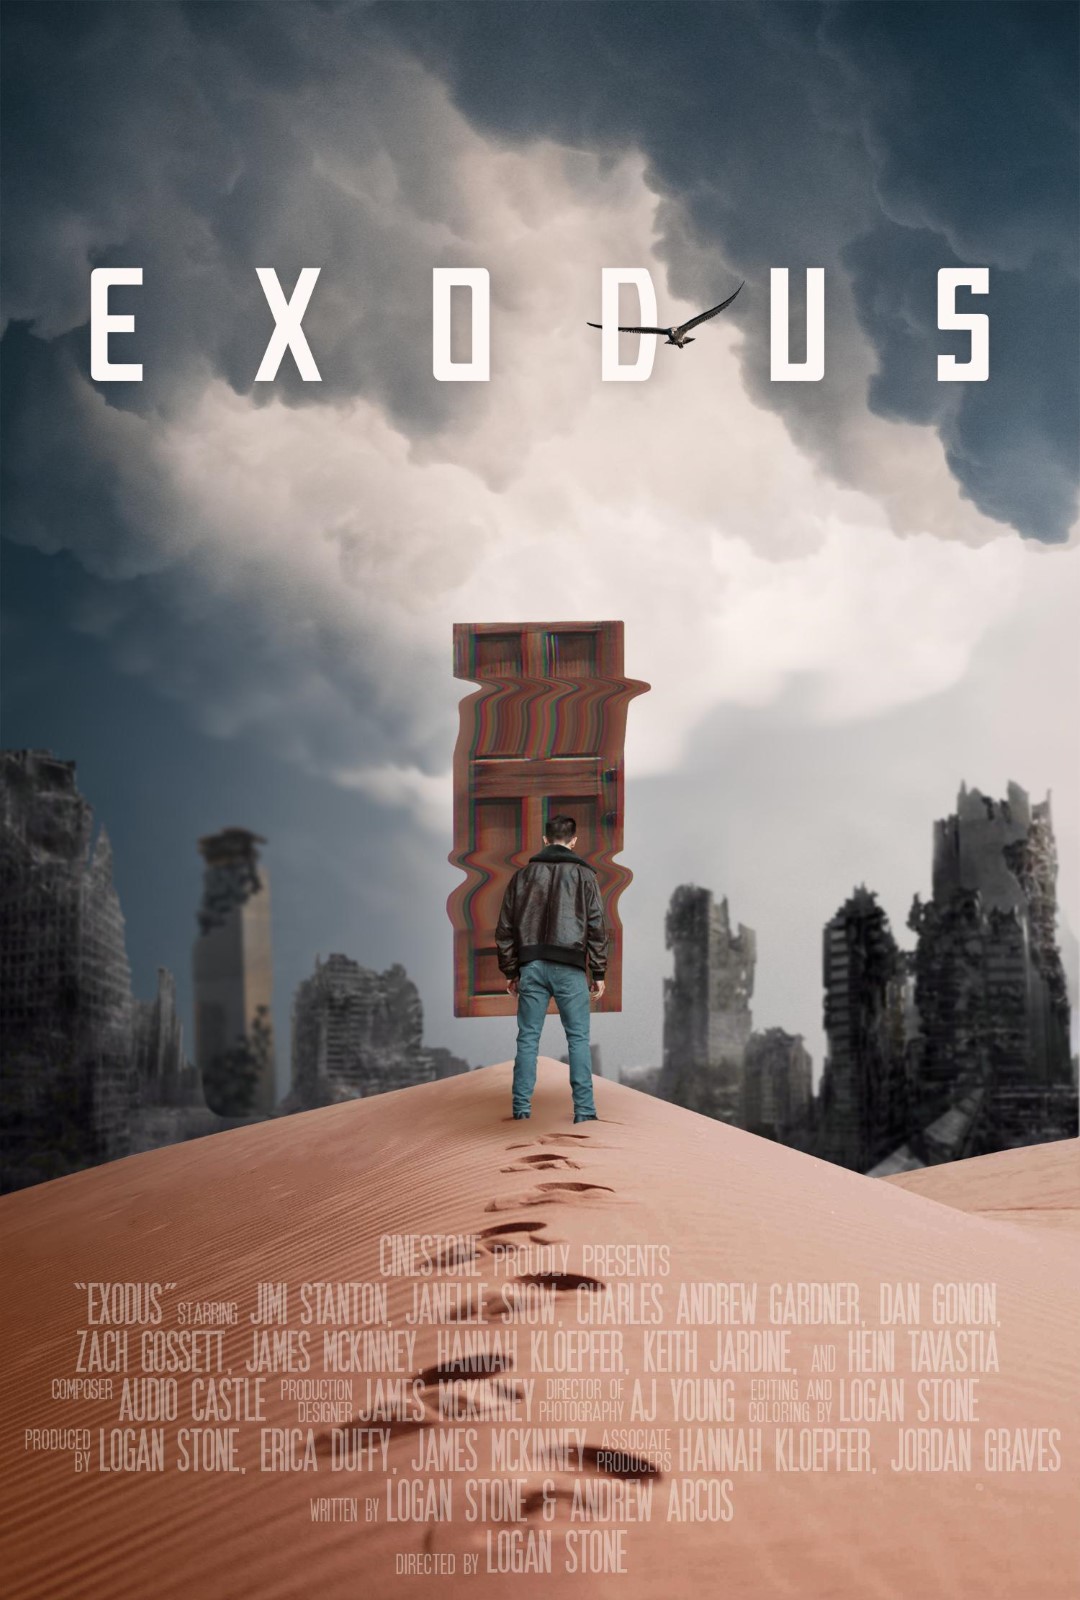 Die neuesten Updates zu Exodus und seinen Funktionen
Der ultimative Exodus-Filmführer für Anfänger